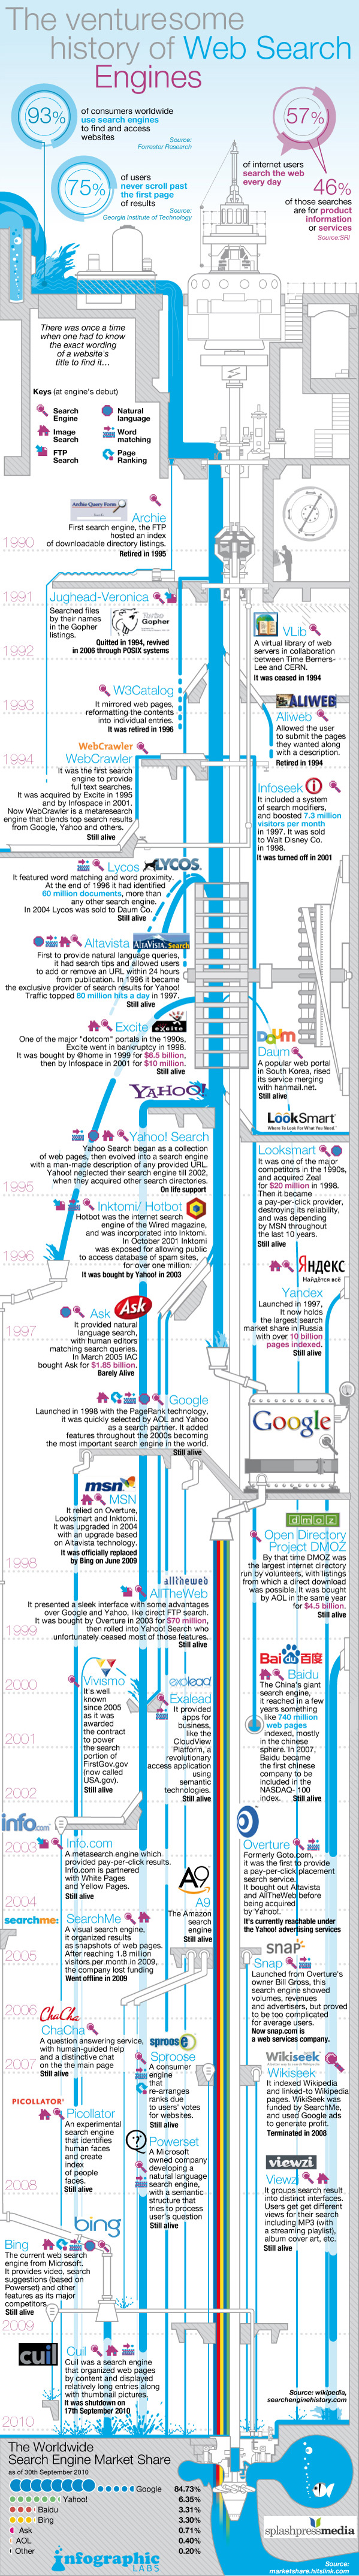 Історія пошукових сервісів (інфографіка)